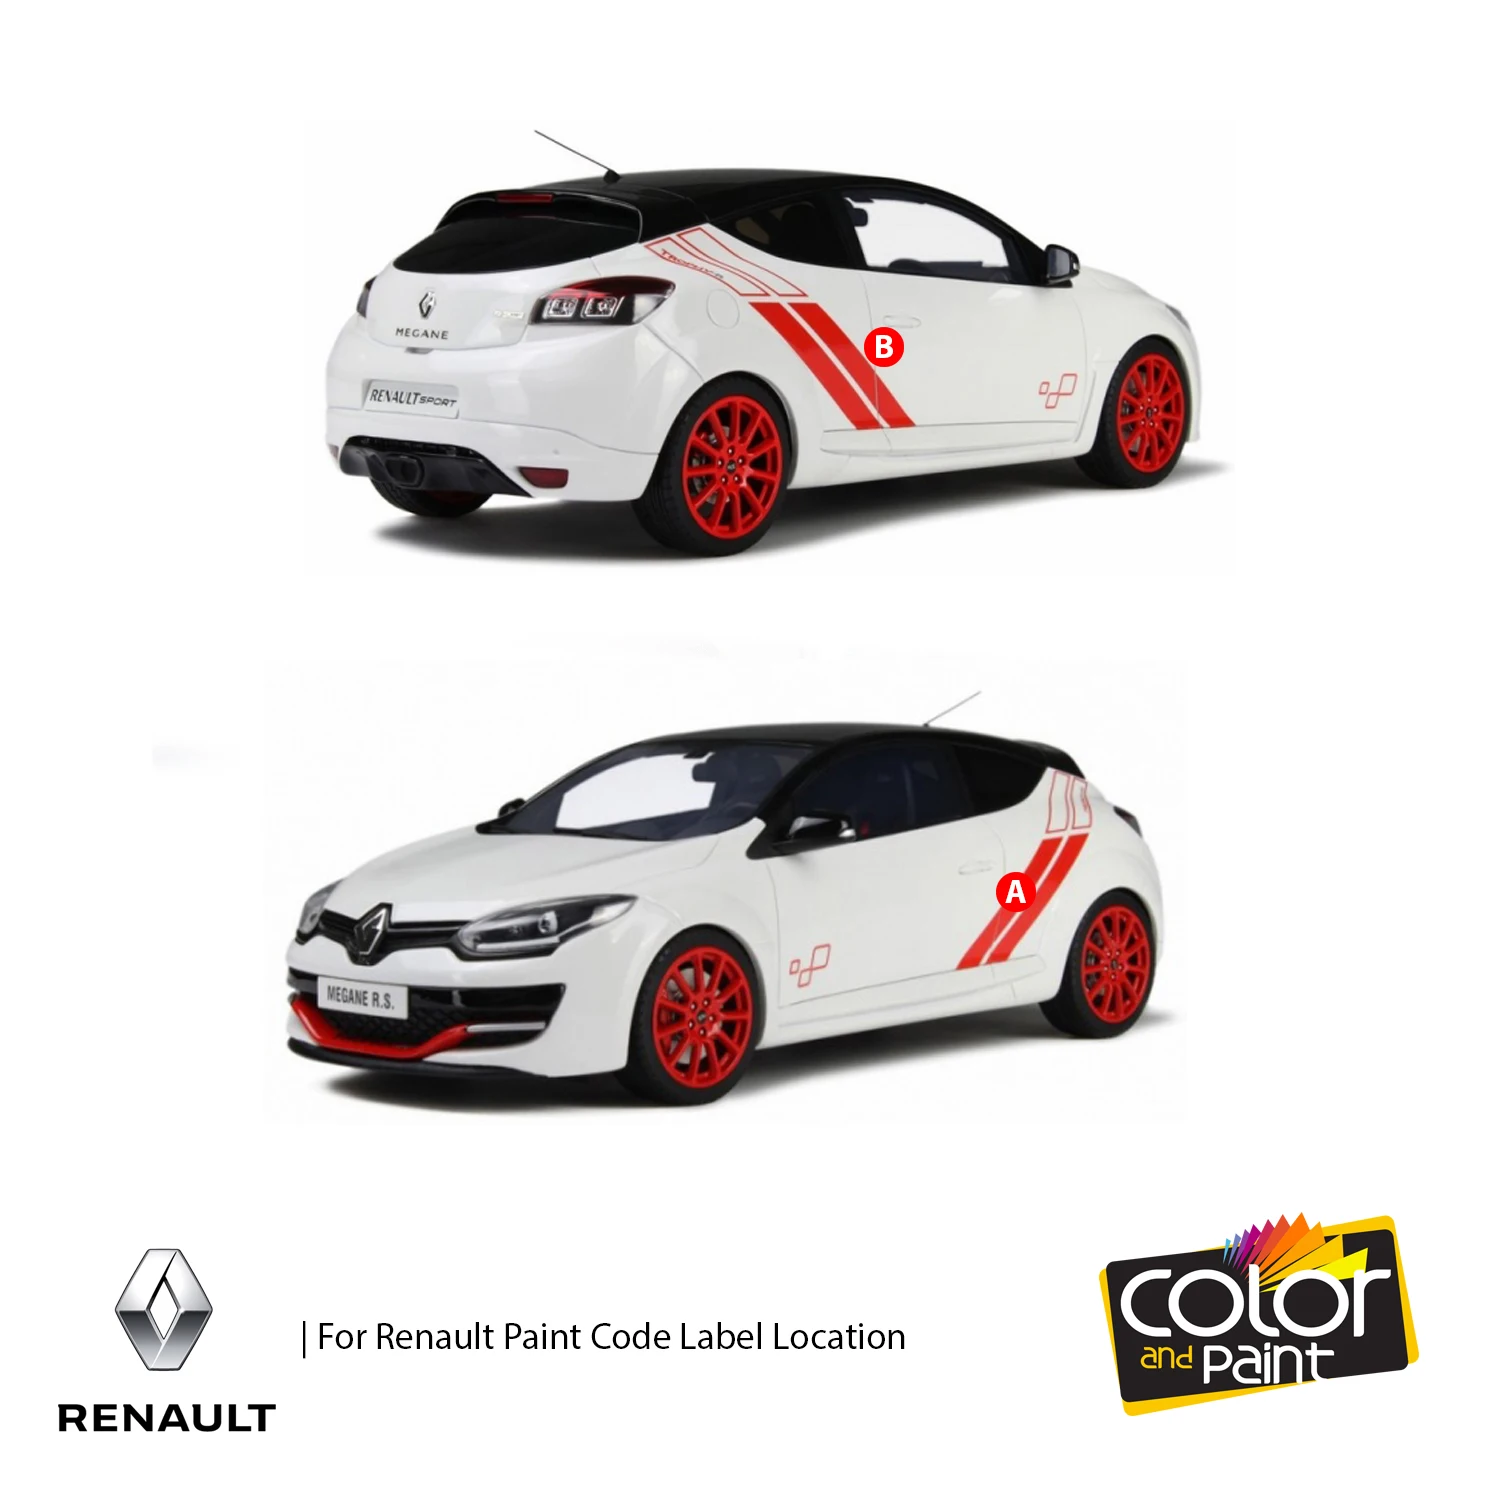 

Color and Paint for Renault Automotive Touch Up Paint - ETINCELLE NACRE MET - ENC - Paint Scratch Repair, exact Match